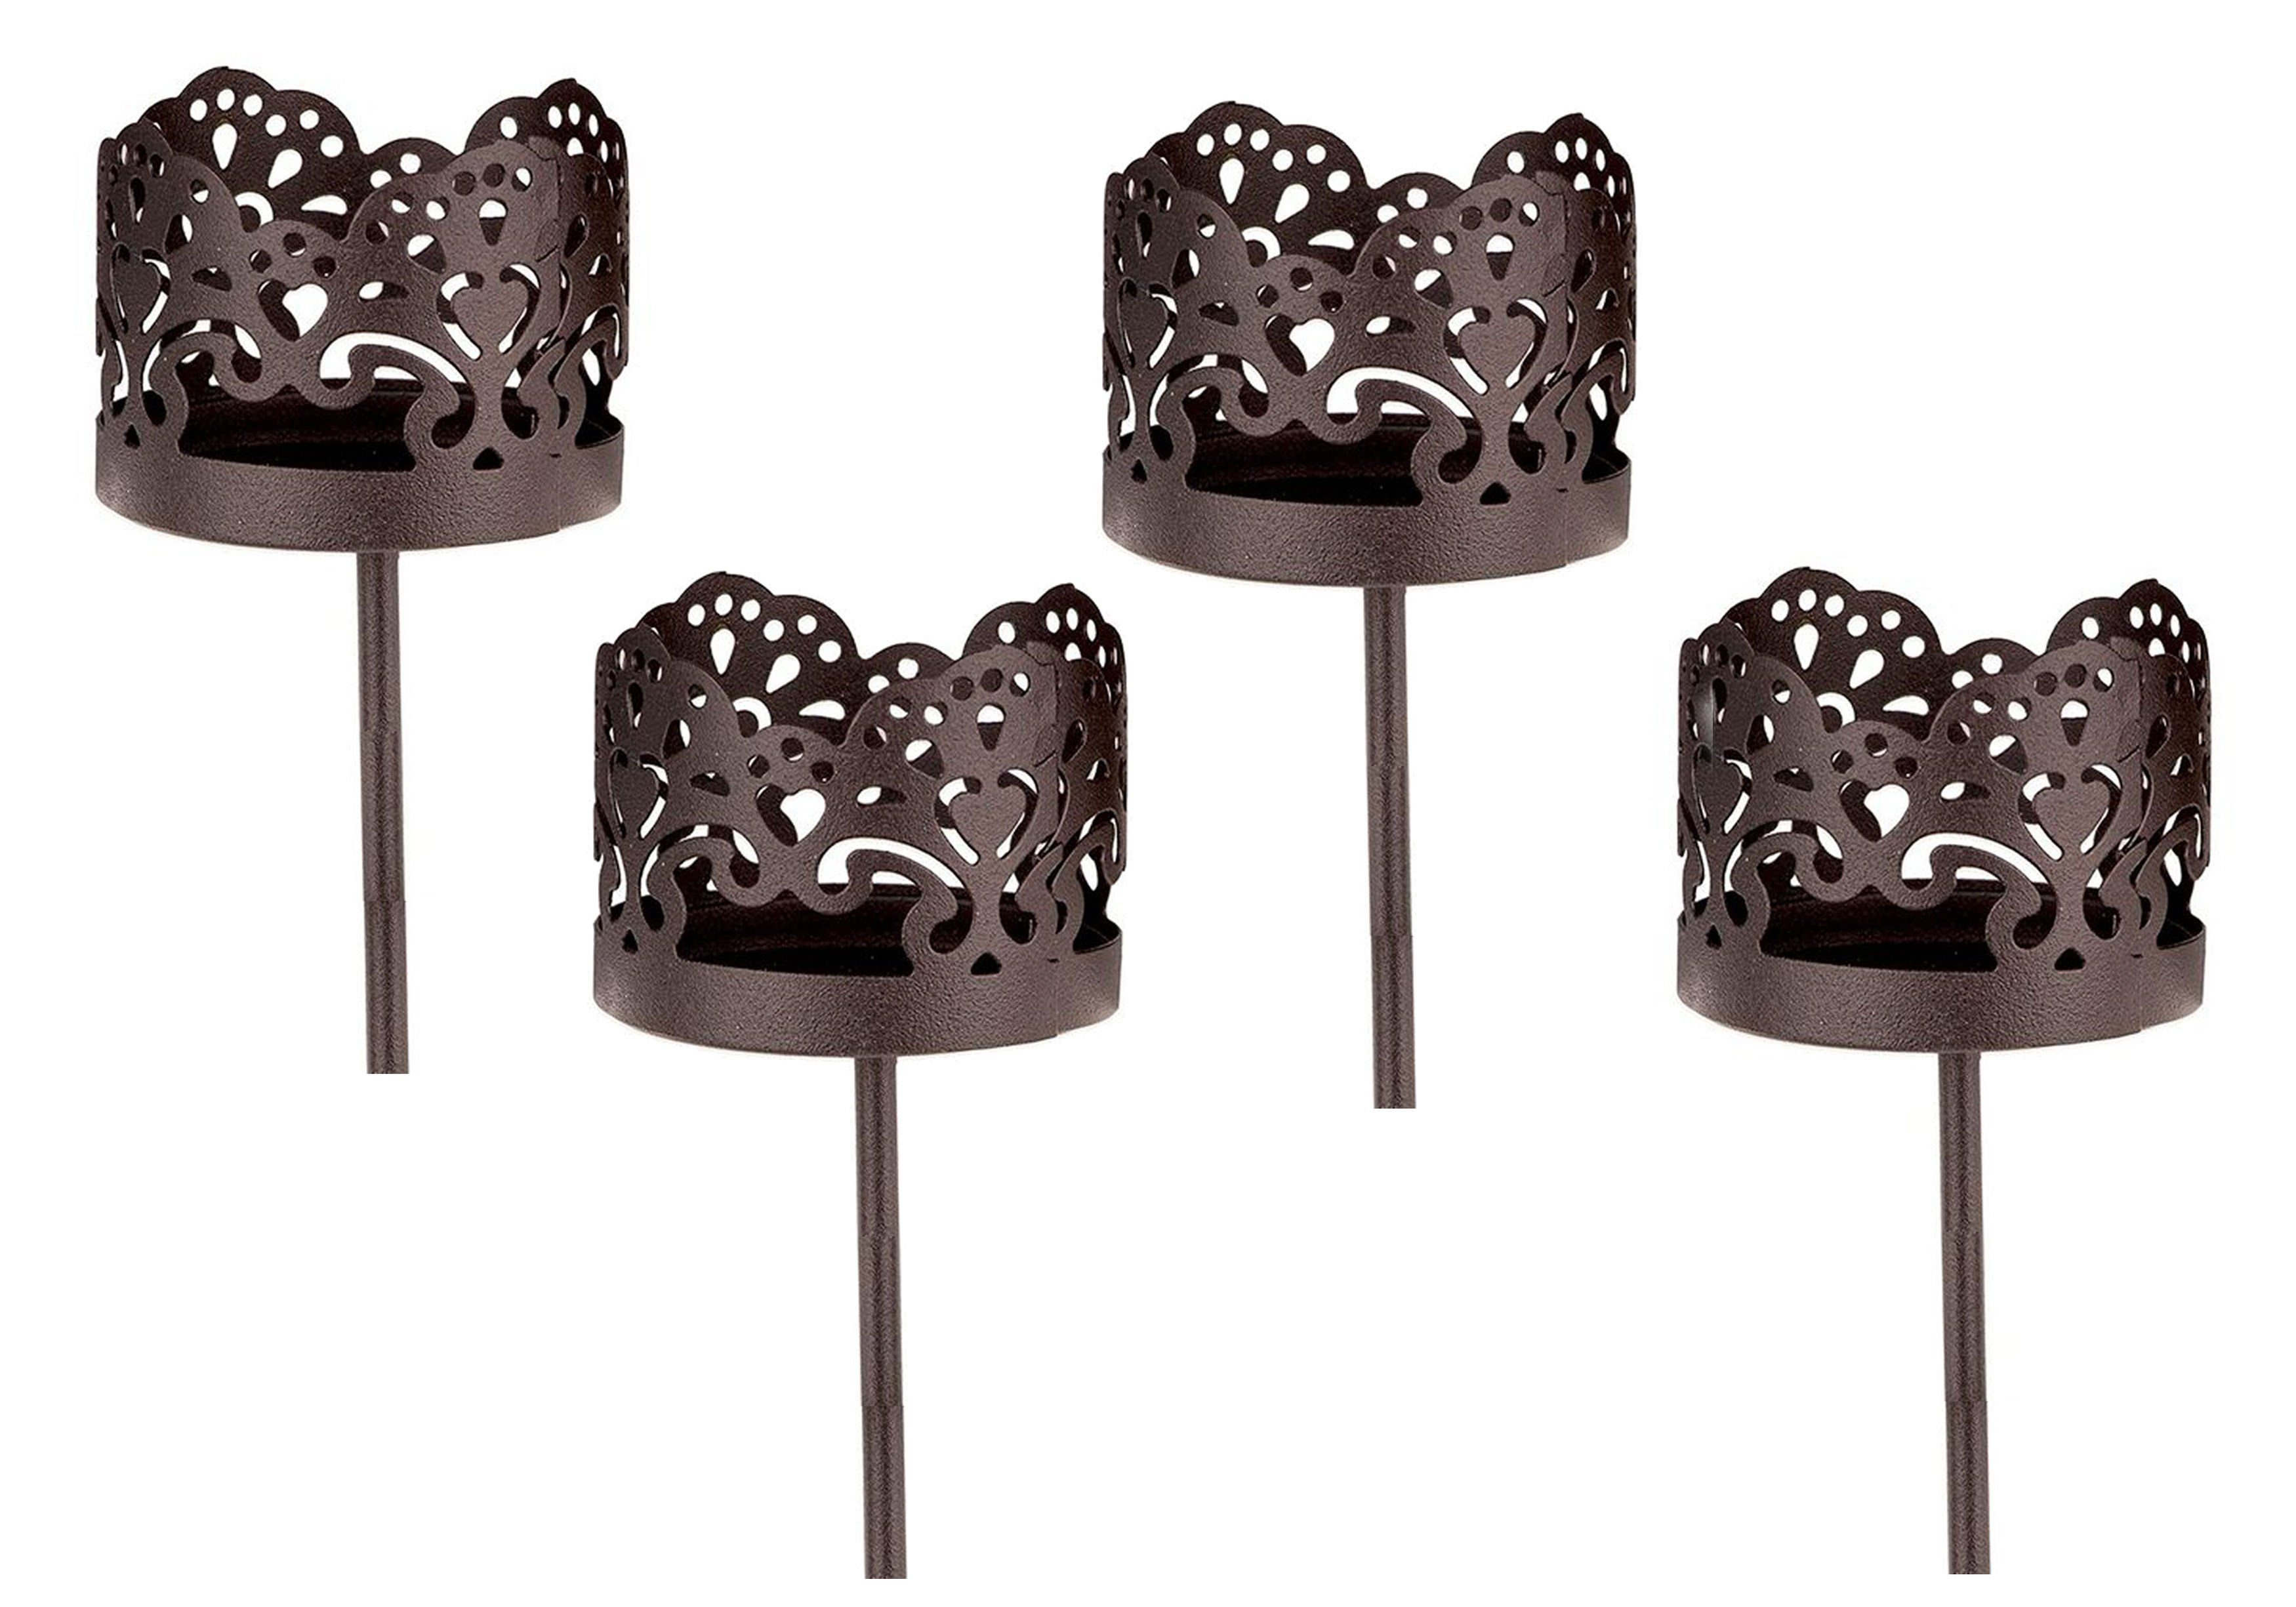 Spetebo Teelichthalter Kerzenpick für Teelicht 4er Set - dunkel braun -, Teelicht Halter für Adventskranz